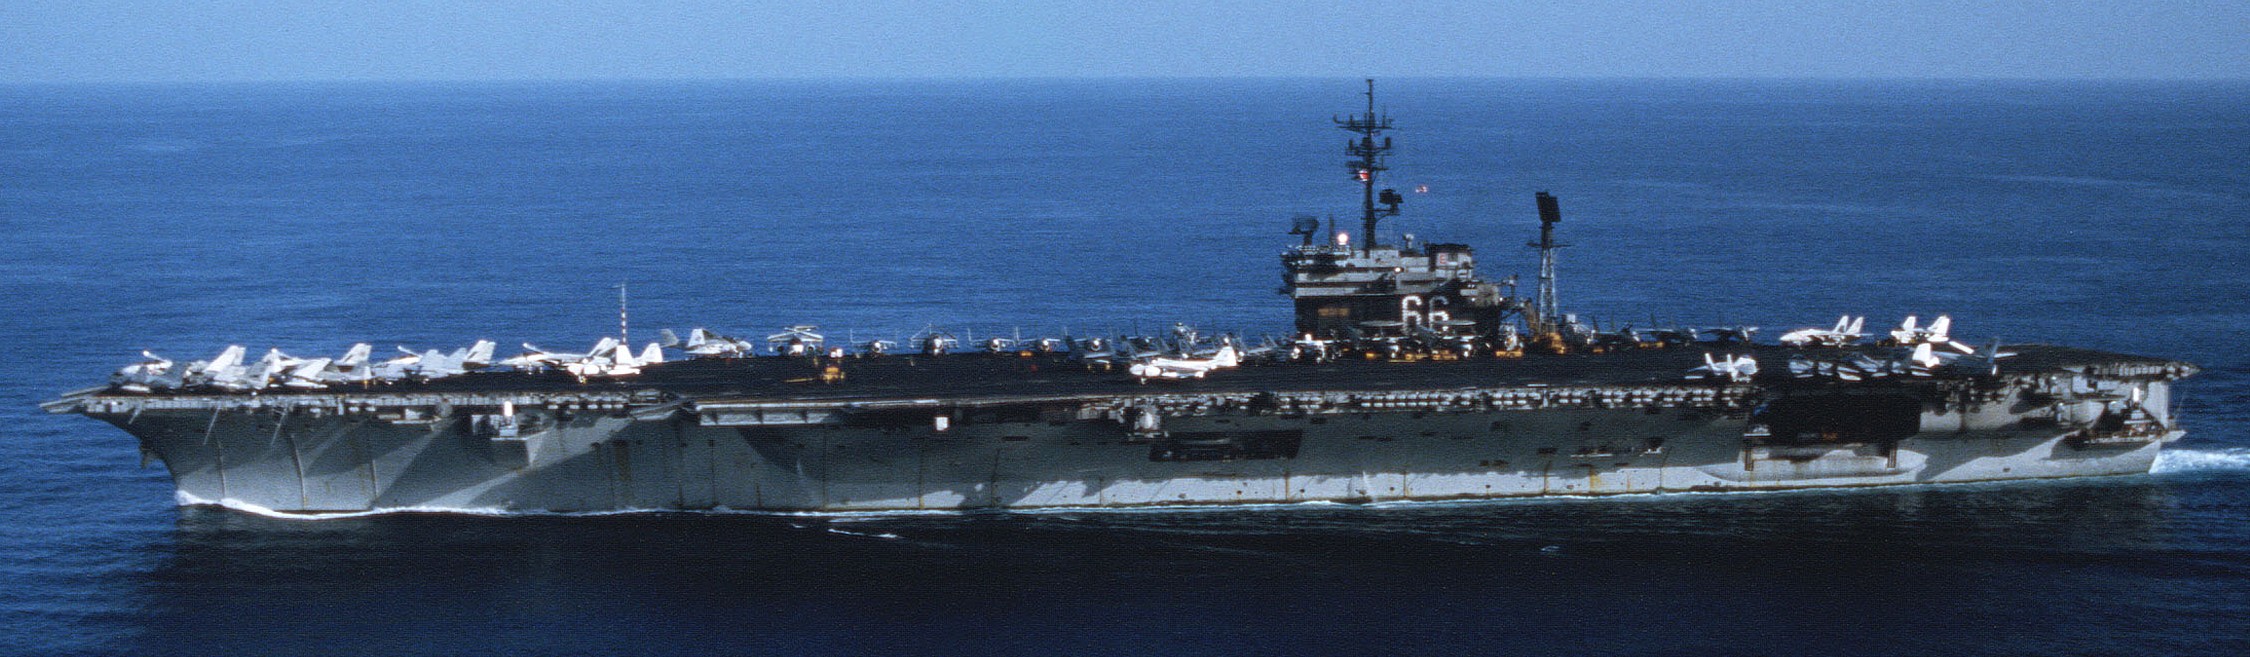 cv-66 uss america kitty hawk class aircraft carrier air wing cvw-1 us navy 49